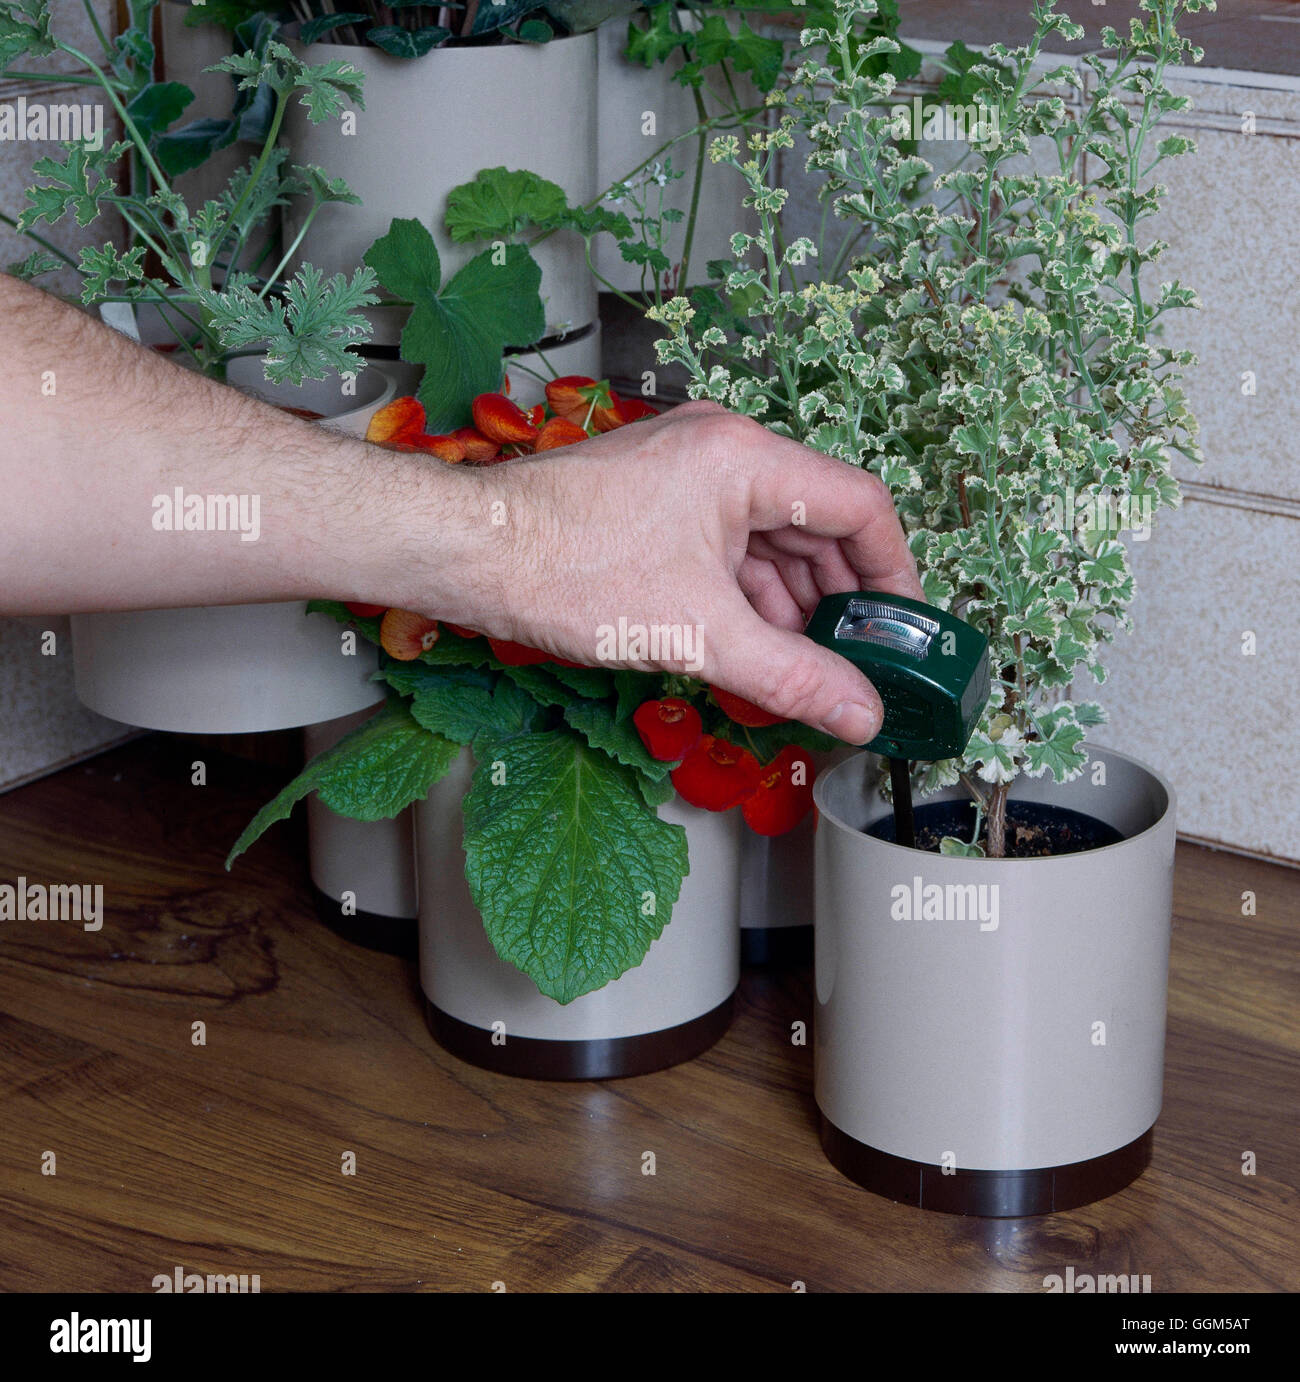 Houseplant Cuidados: - Usar un medidor de humedad para no sobre-agua TAS Fotos Horticultur025236 Foto de stock